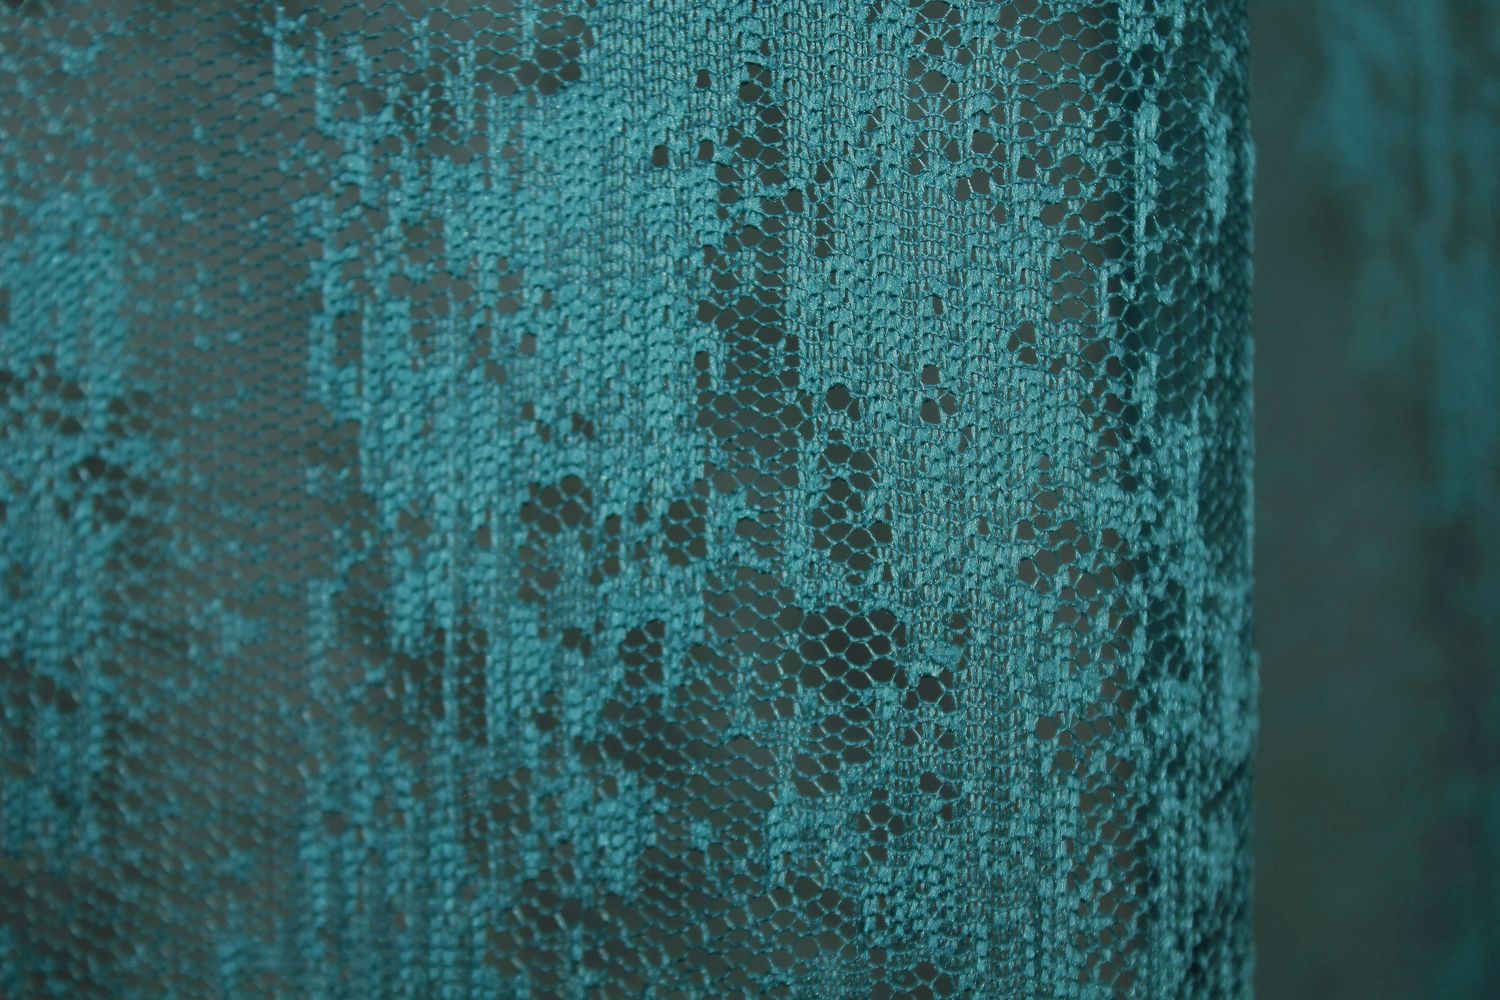 Тюль жаккард, коллекция "Мрамор" цвет бирюзовый 1409т, Тюль на метраж, Нужную Вам ширину указывайте при покупке. (Ширина набирается по длине рулона.), 2,8 м.